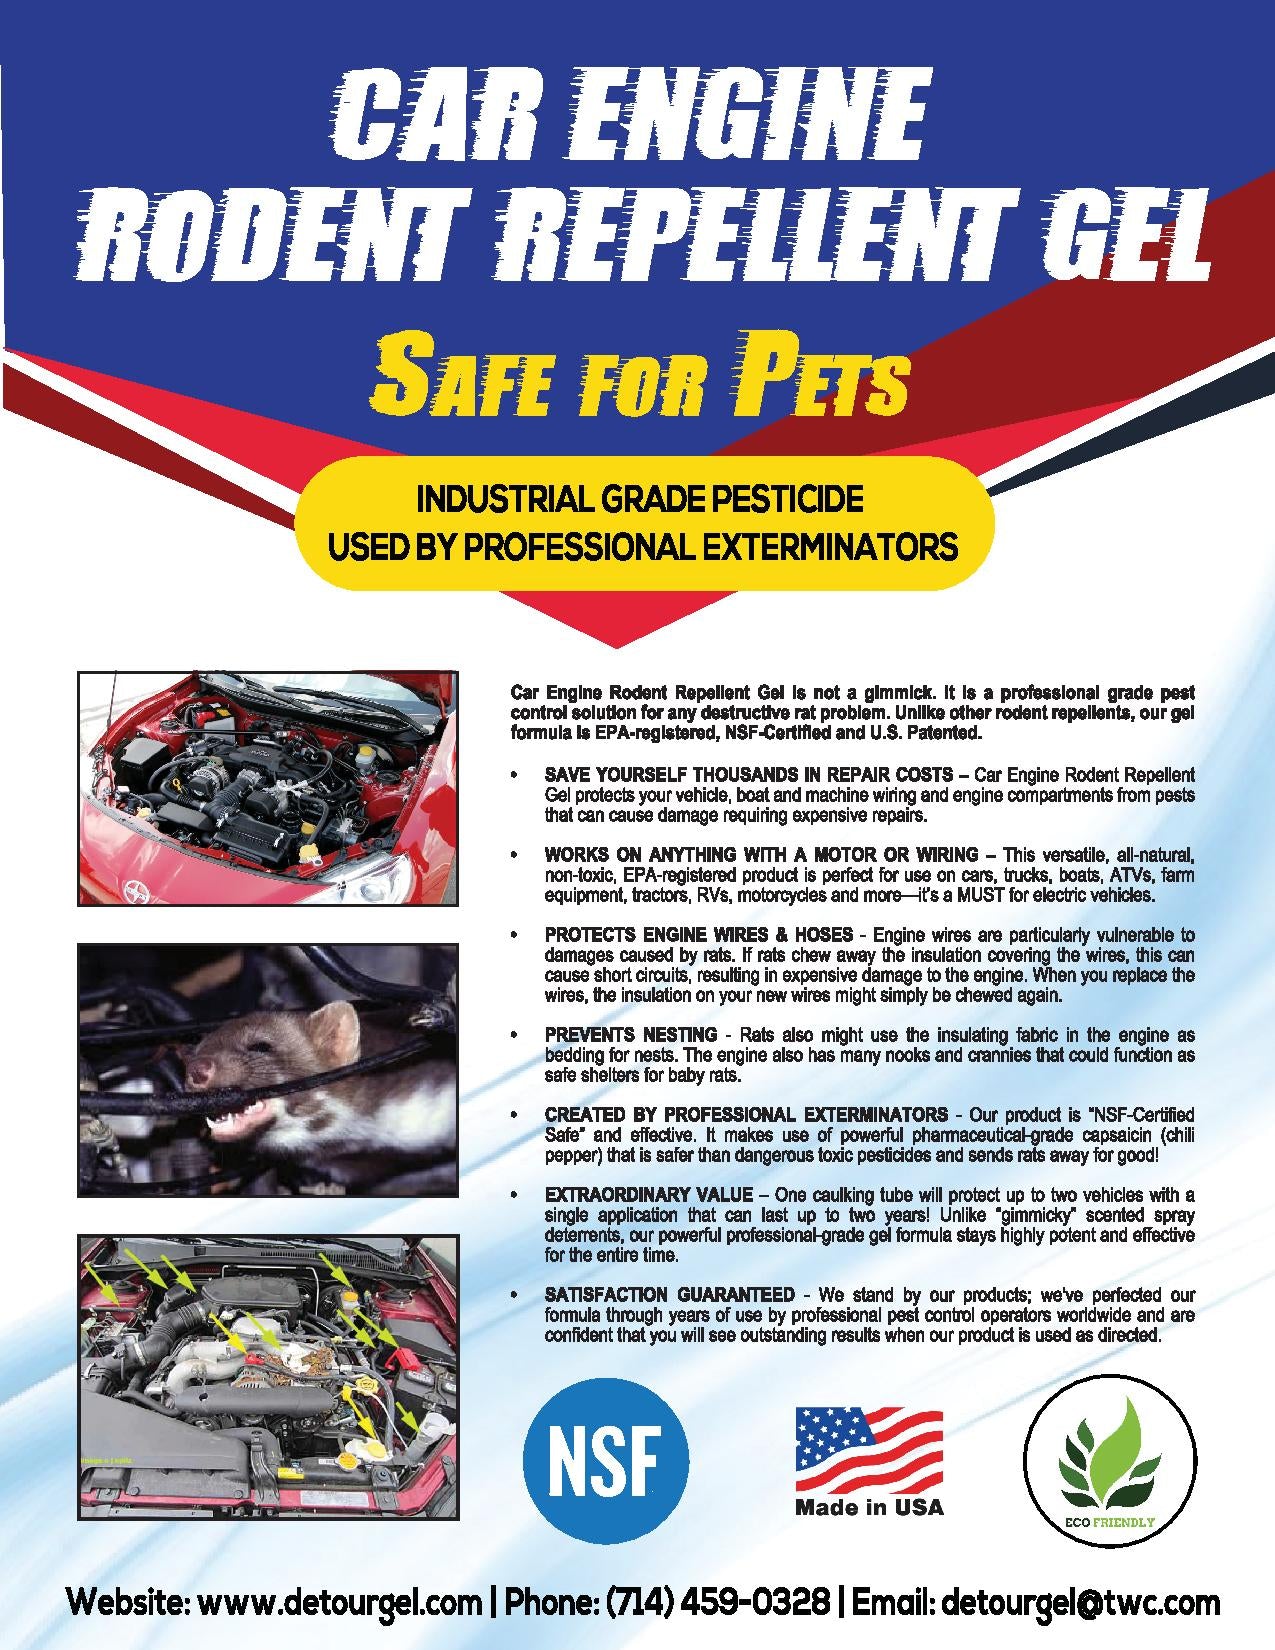 Car Engine Rodent Repellent Gel